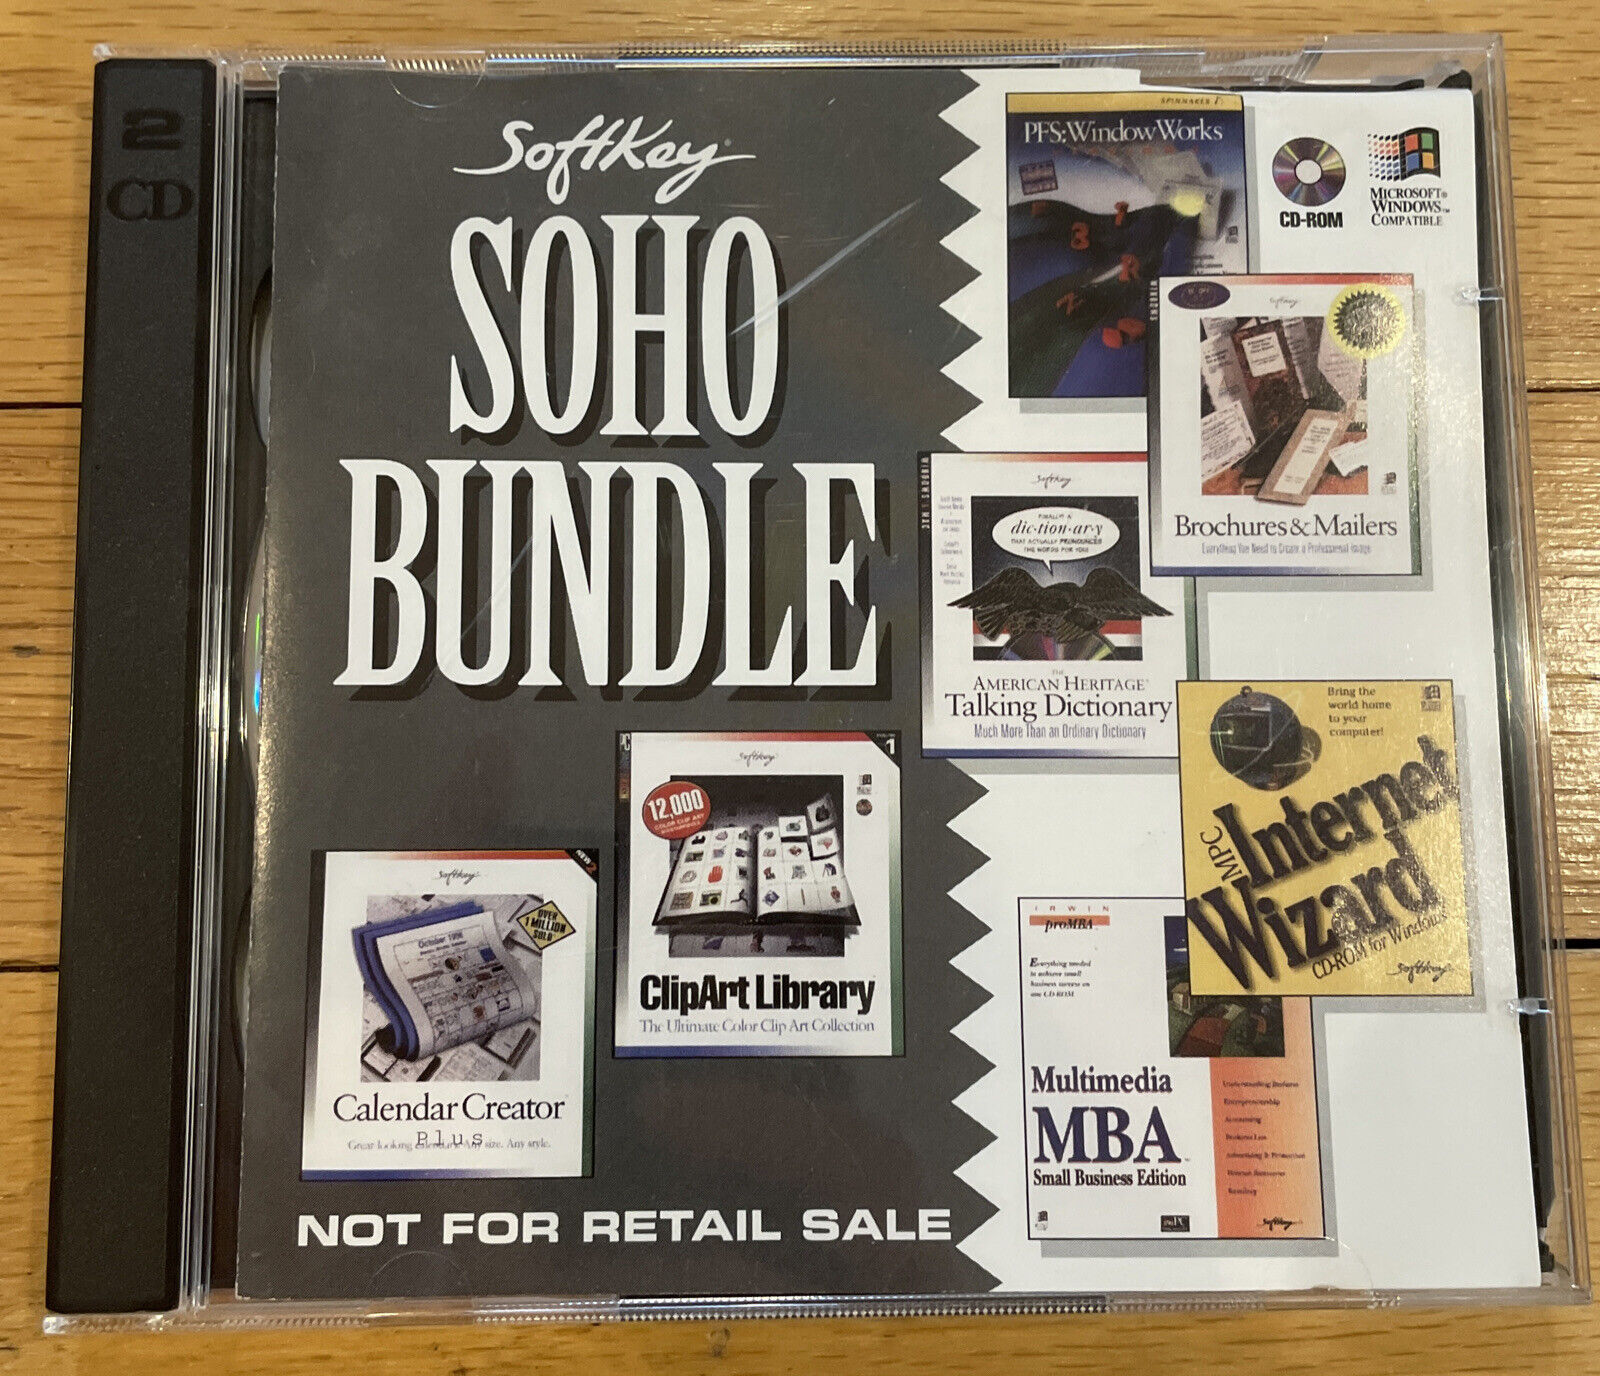 Softkey Soho Bundle & Multimedia MBA Software PC CD 2 Pack Windows Rare VTG 1995